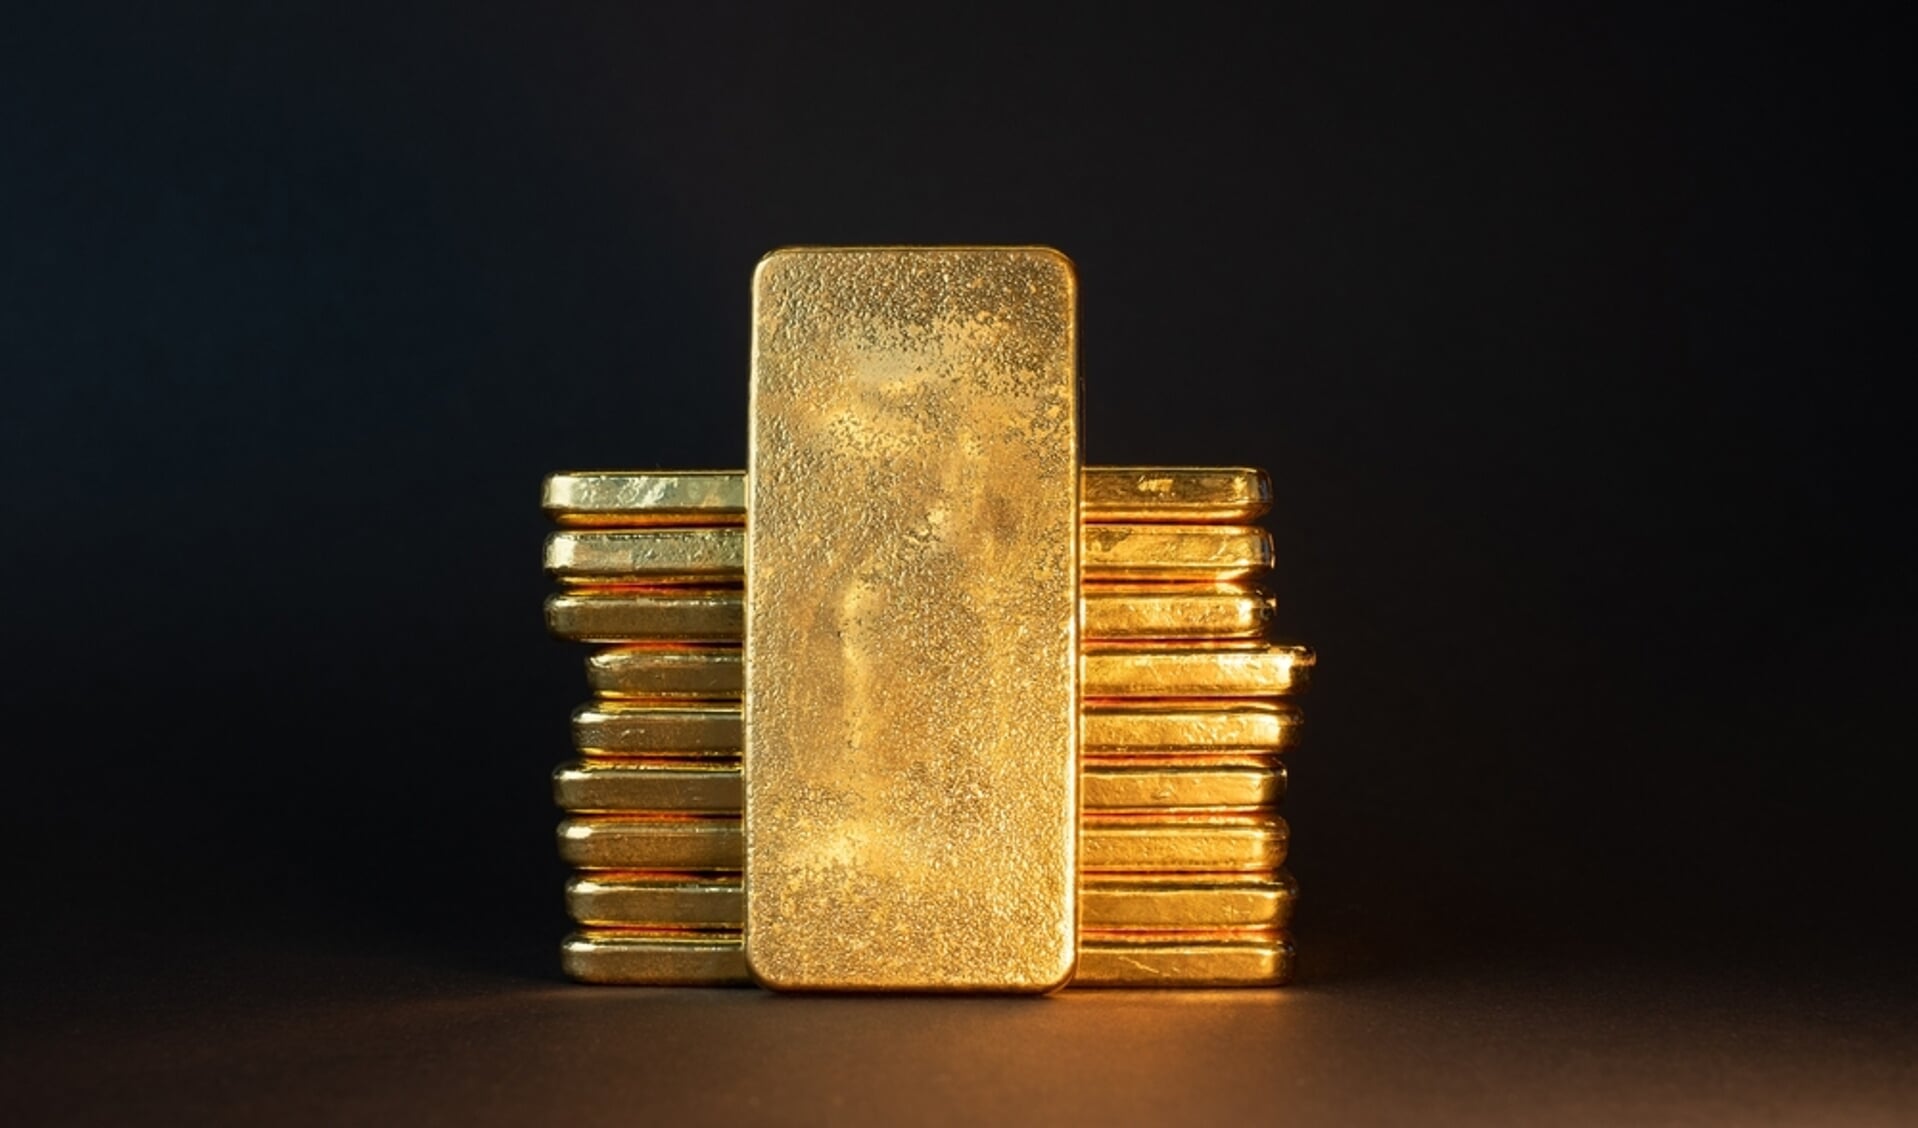 Nederlandse centrale banken blijven goud kopen vanwege inflatie en als preventieve maatregel tegen financiële crisis - Nieuws uit de Amersfoort